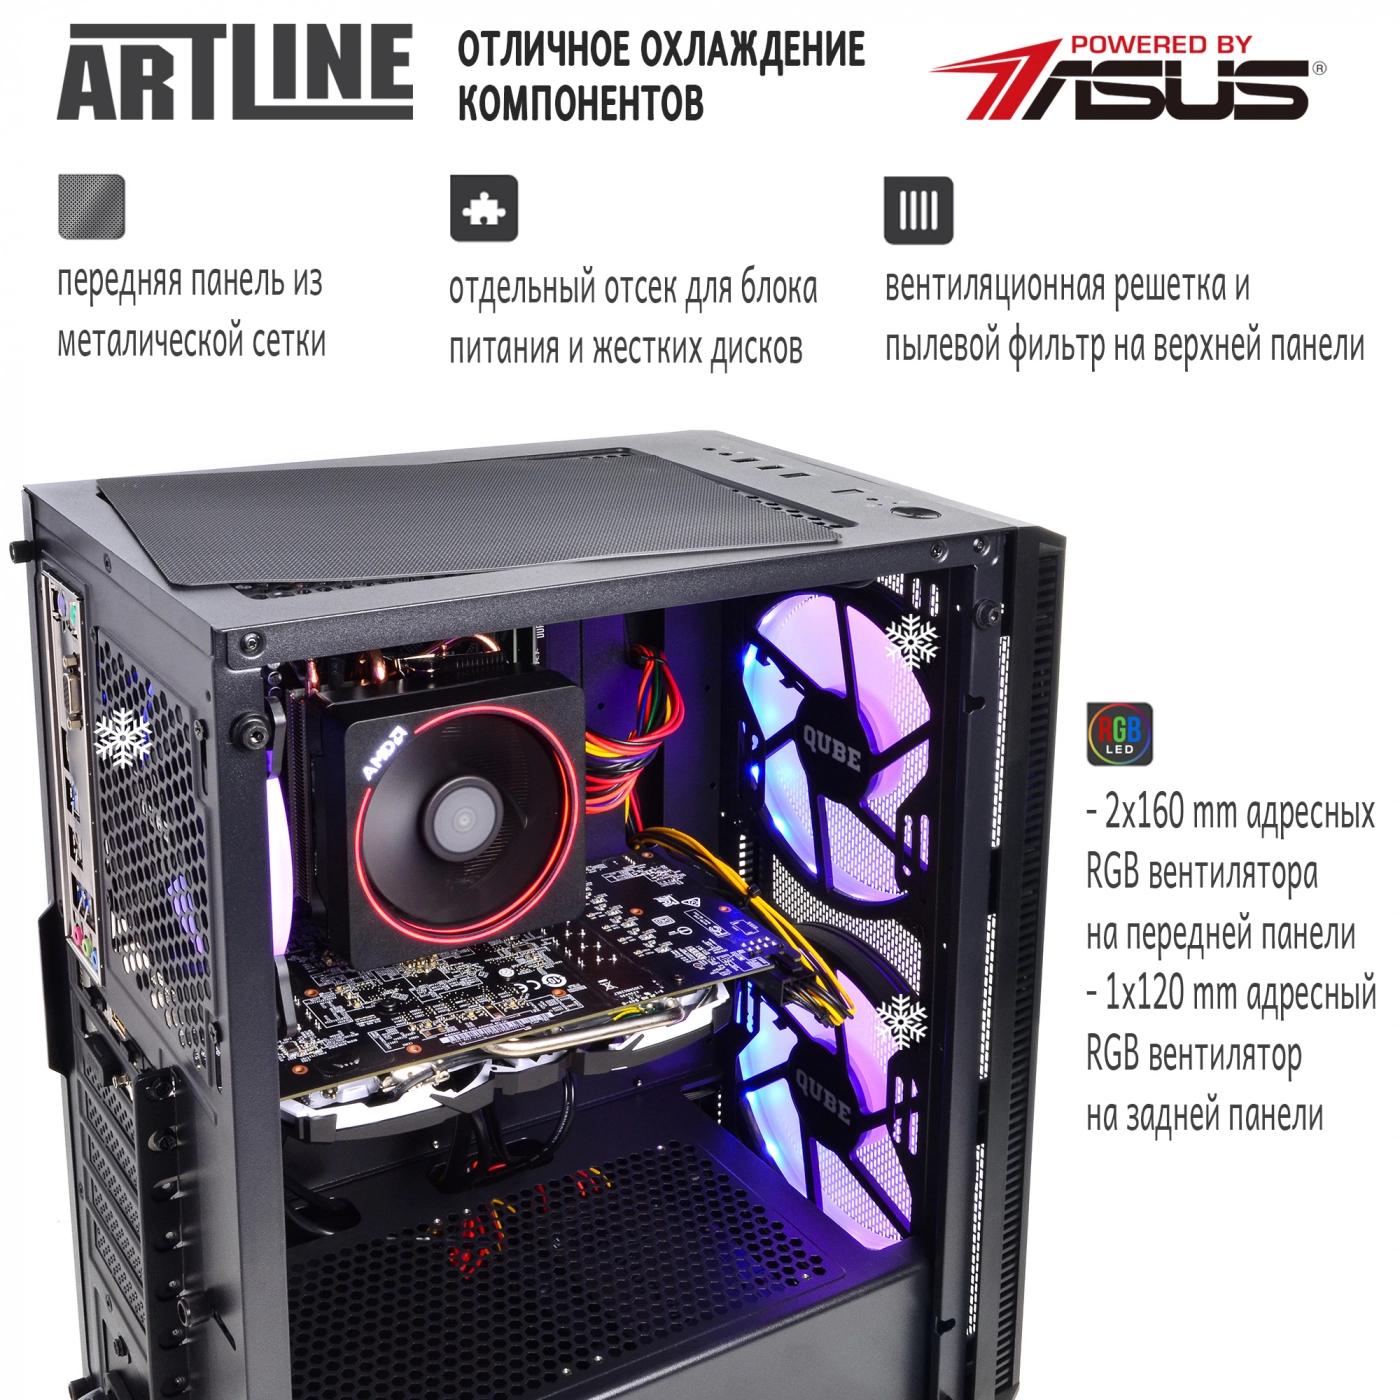 Купить Компьютер ARTLINE Gaming X63v16 - фото 2